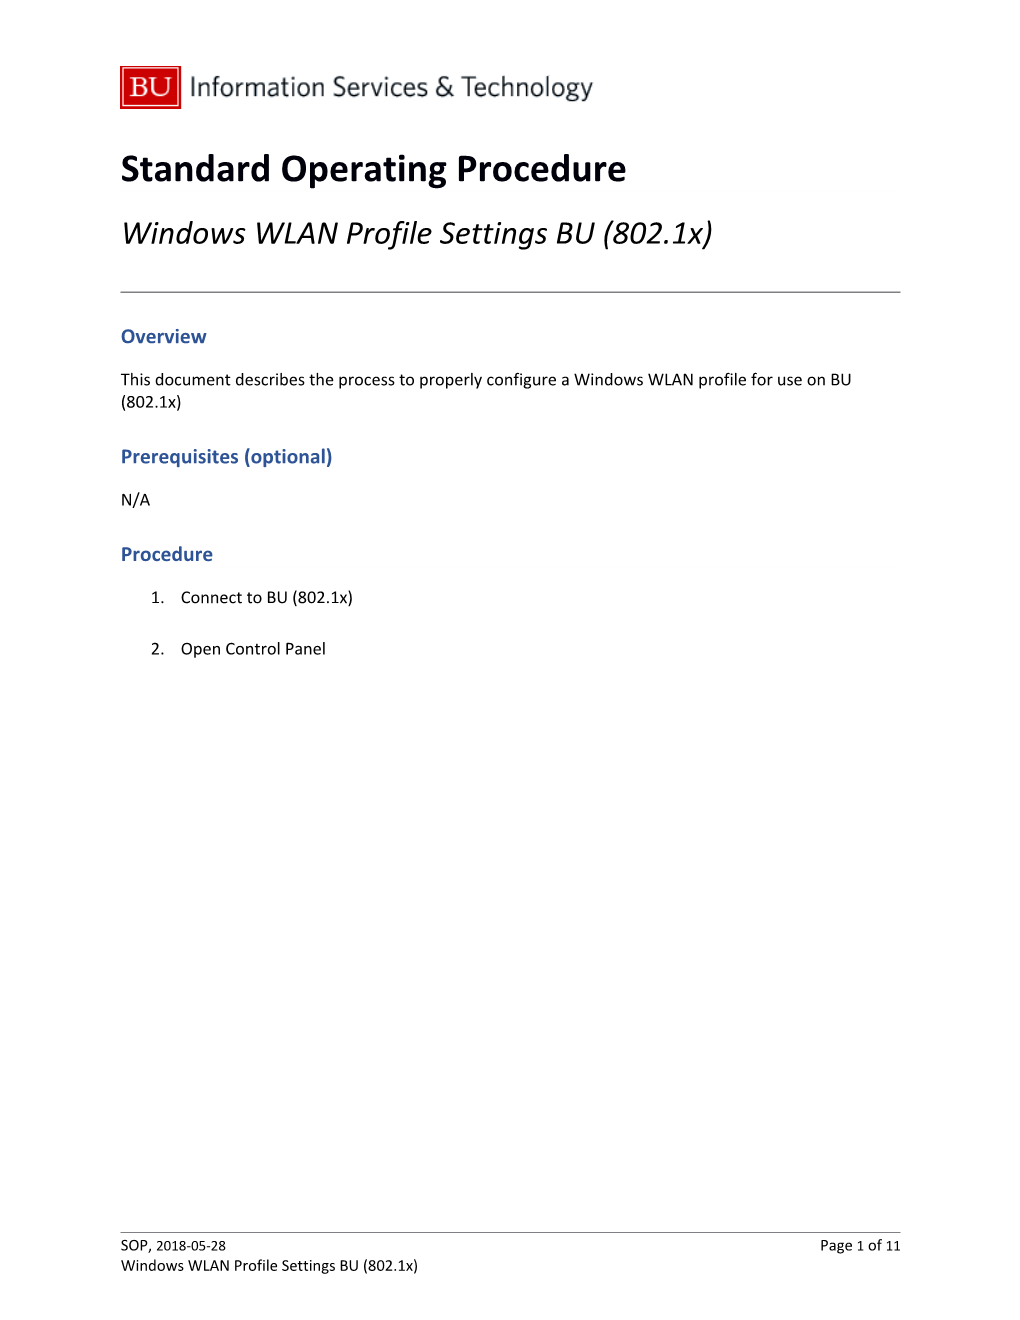 Standard Operating Procedure s1